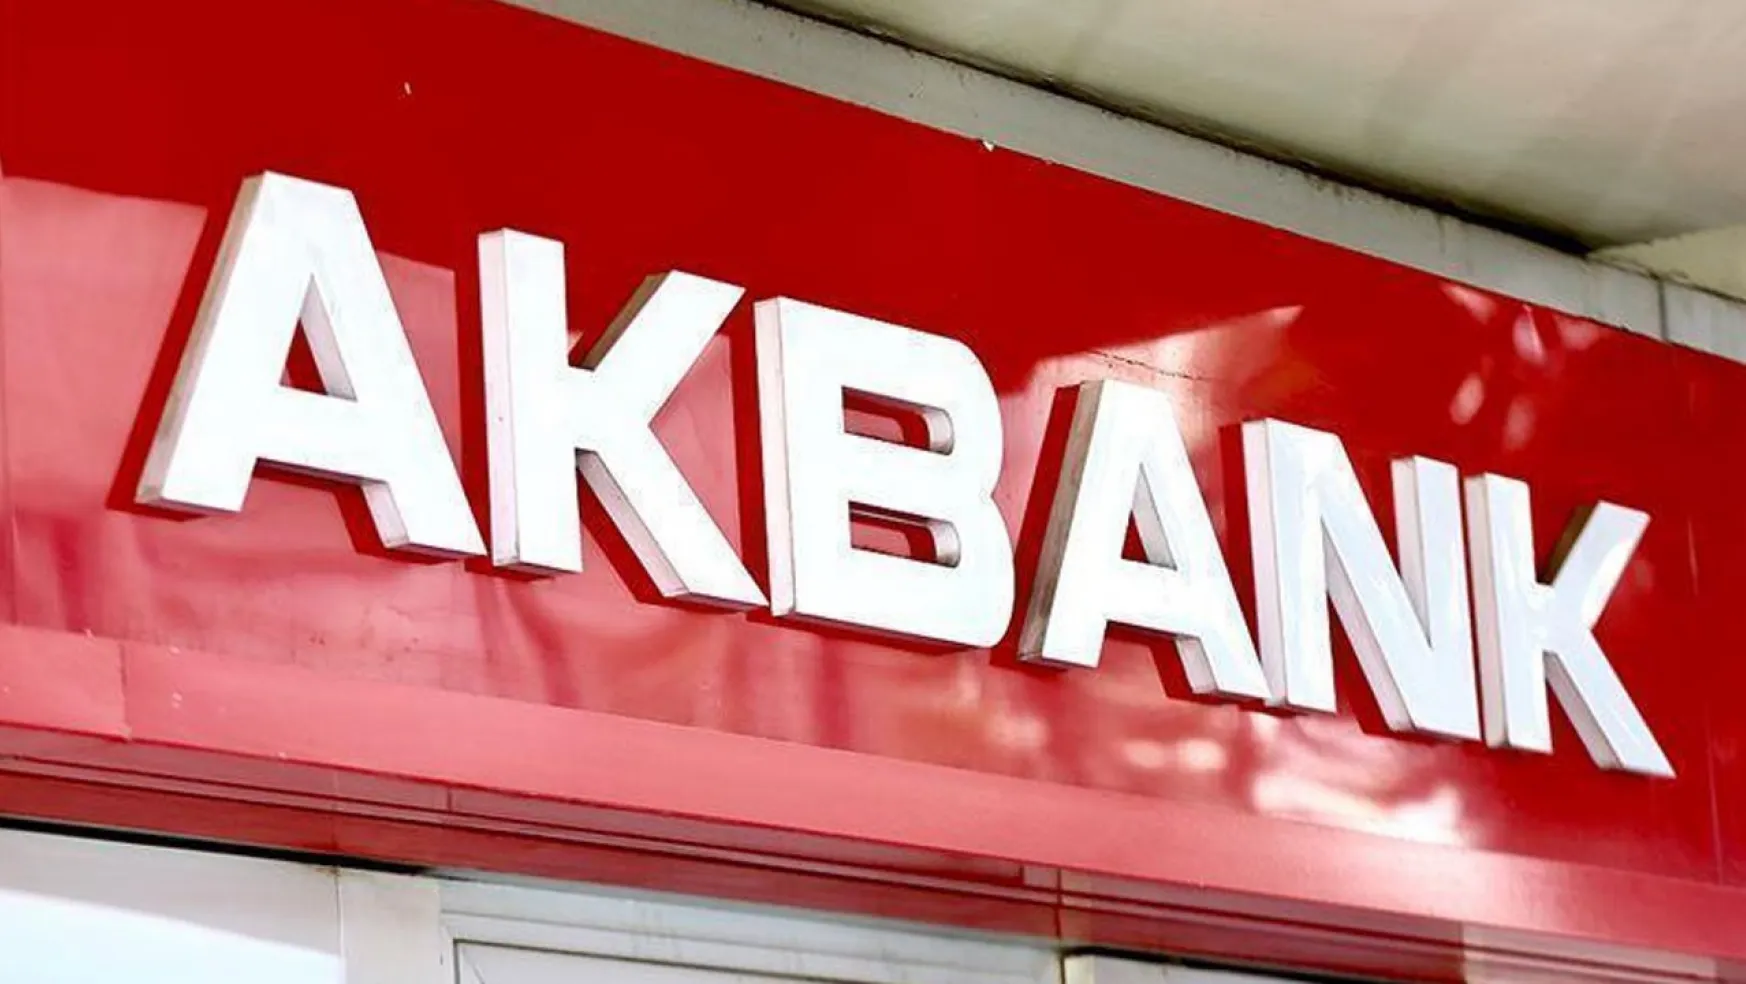 Akbank'tan Yılbaşı Hediyesi: 2 bin 500 TL Verecek!